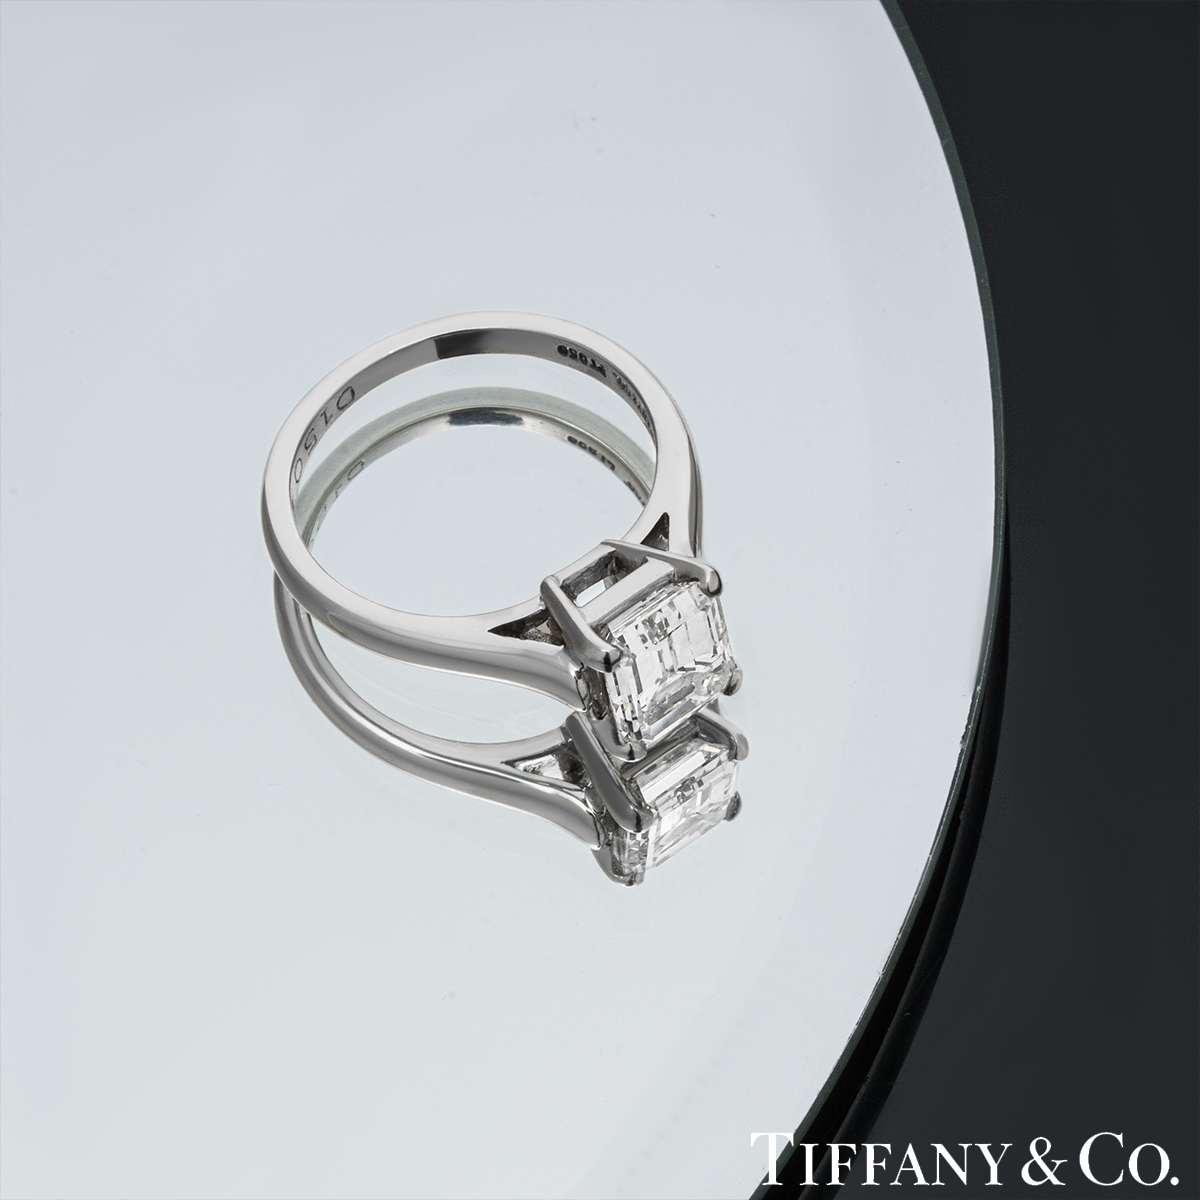 Tiffany & Co. Platinum Emerald Cut Diamond Ring 1.59ct E/VS1